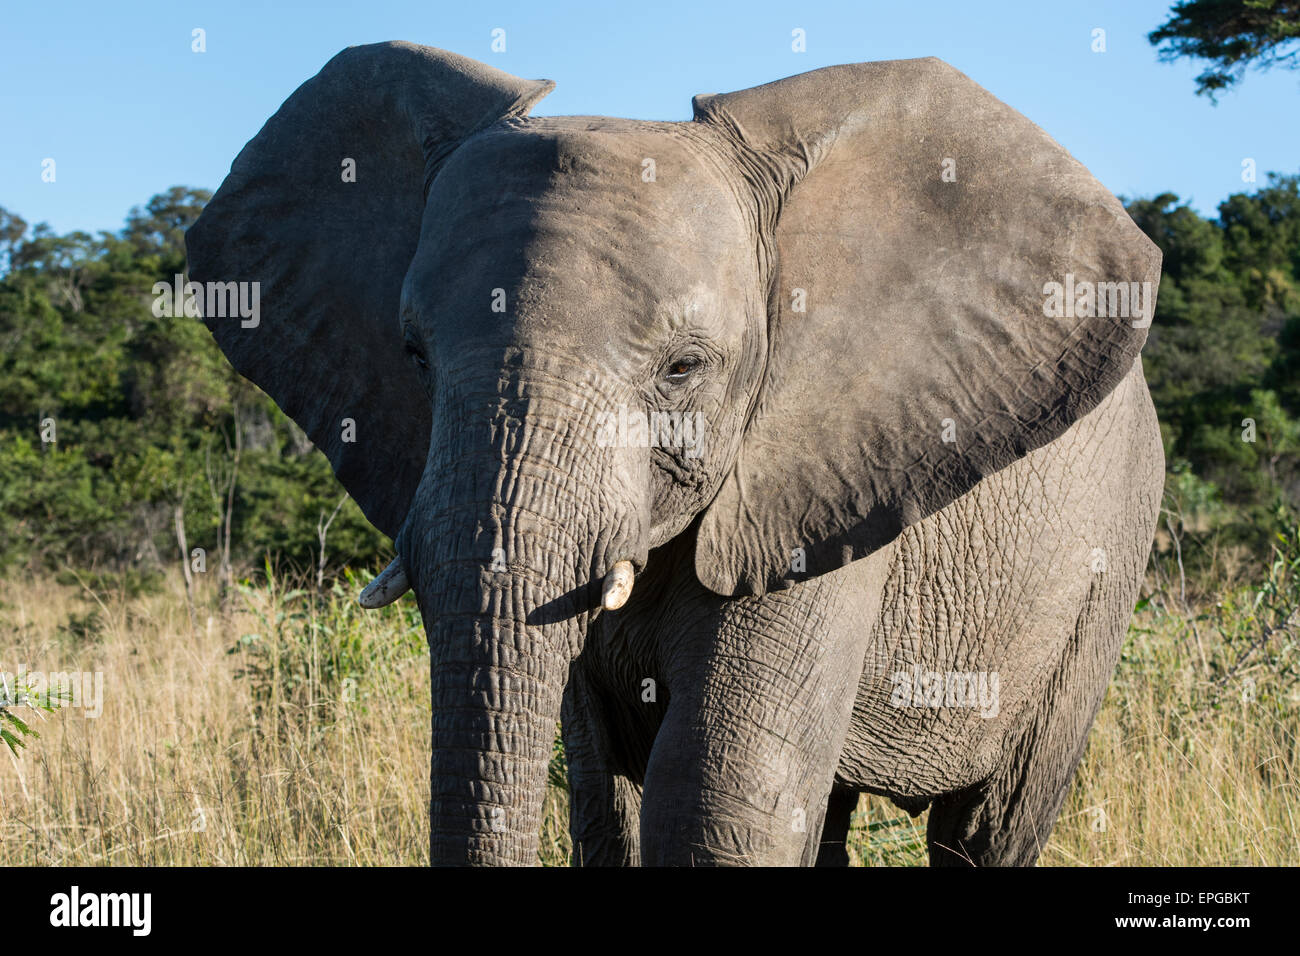 South Africa, Eastern Cape, East London. Inkwenkwezi Game Reserve. African elephant (Wild: Loxodonta africana) Stock Photo